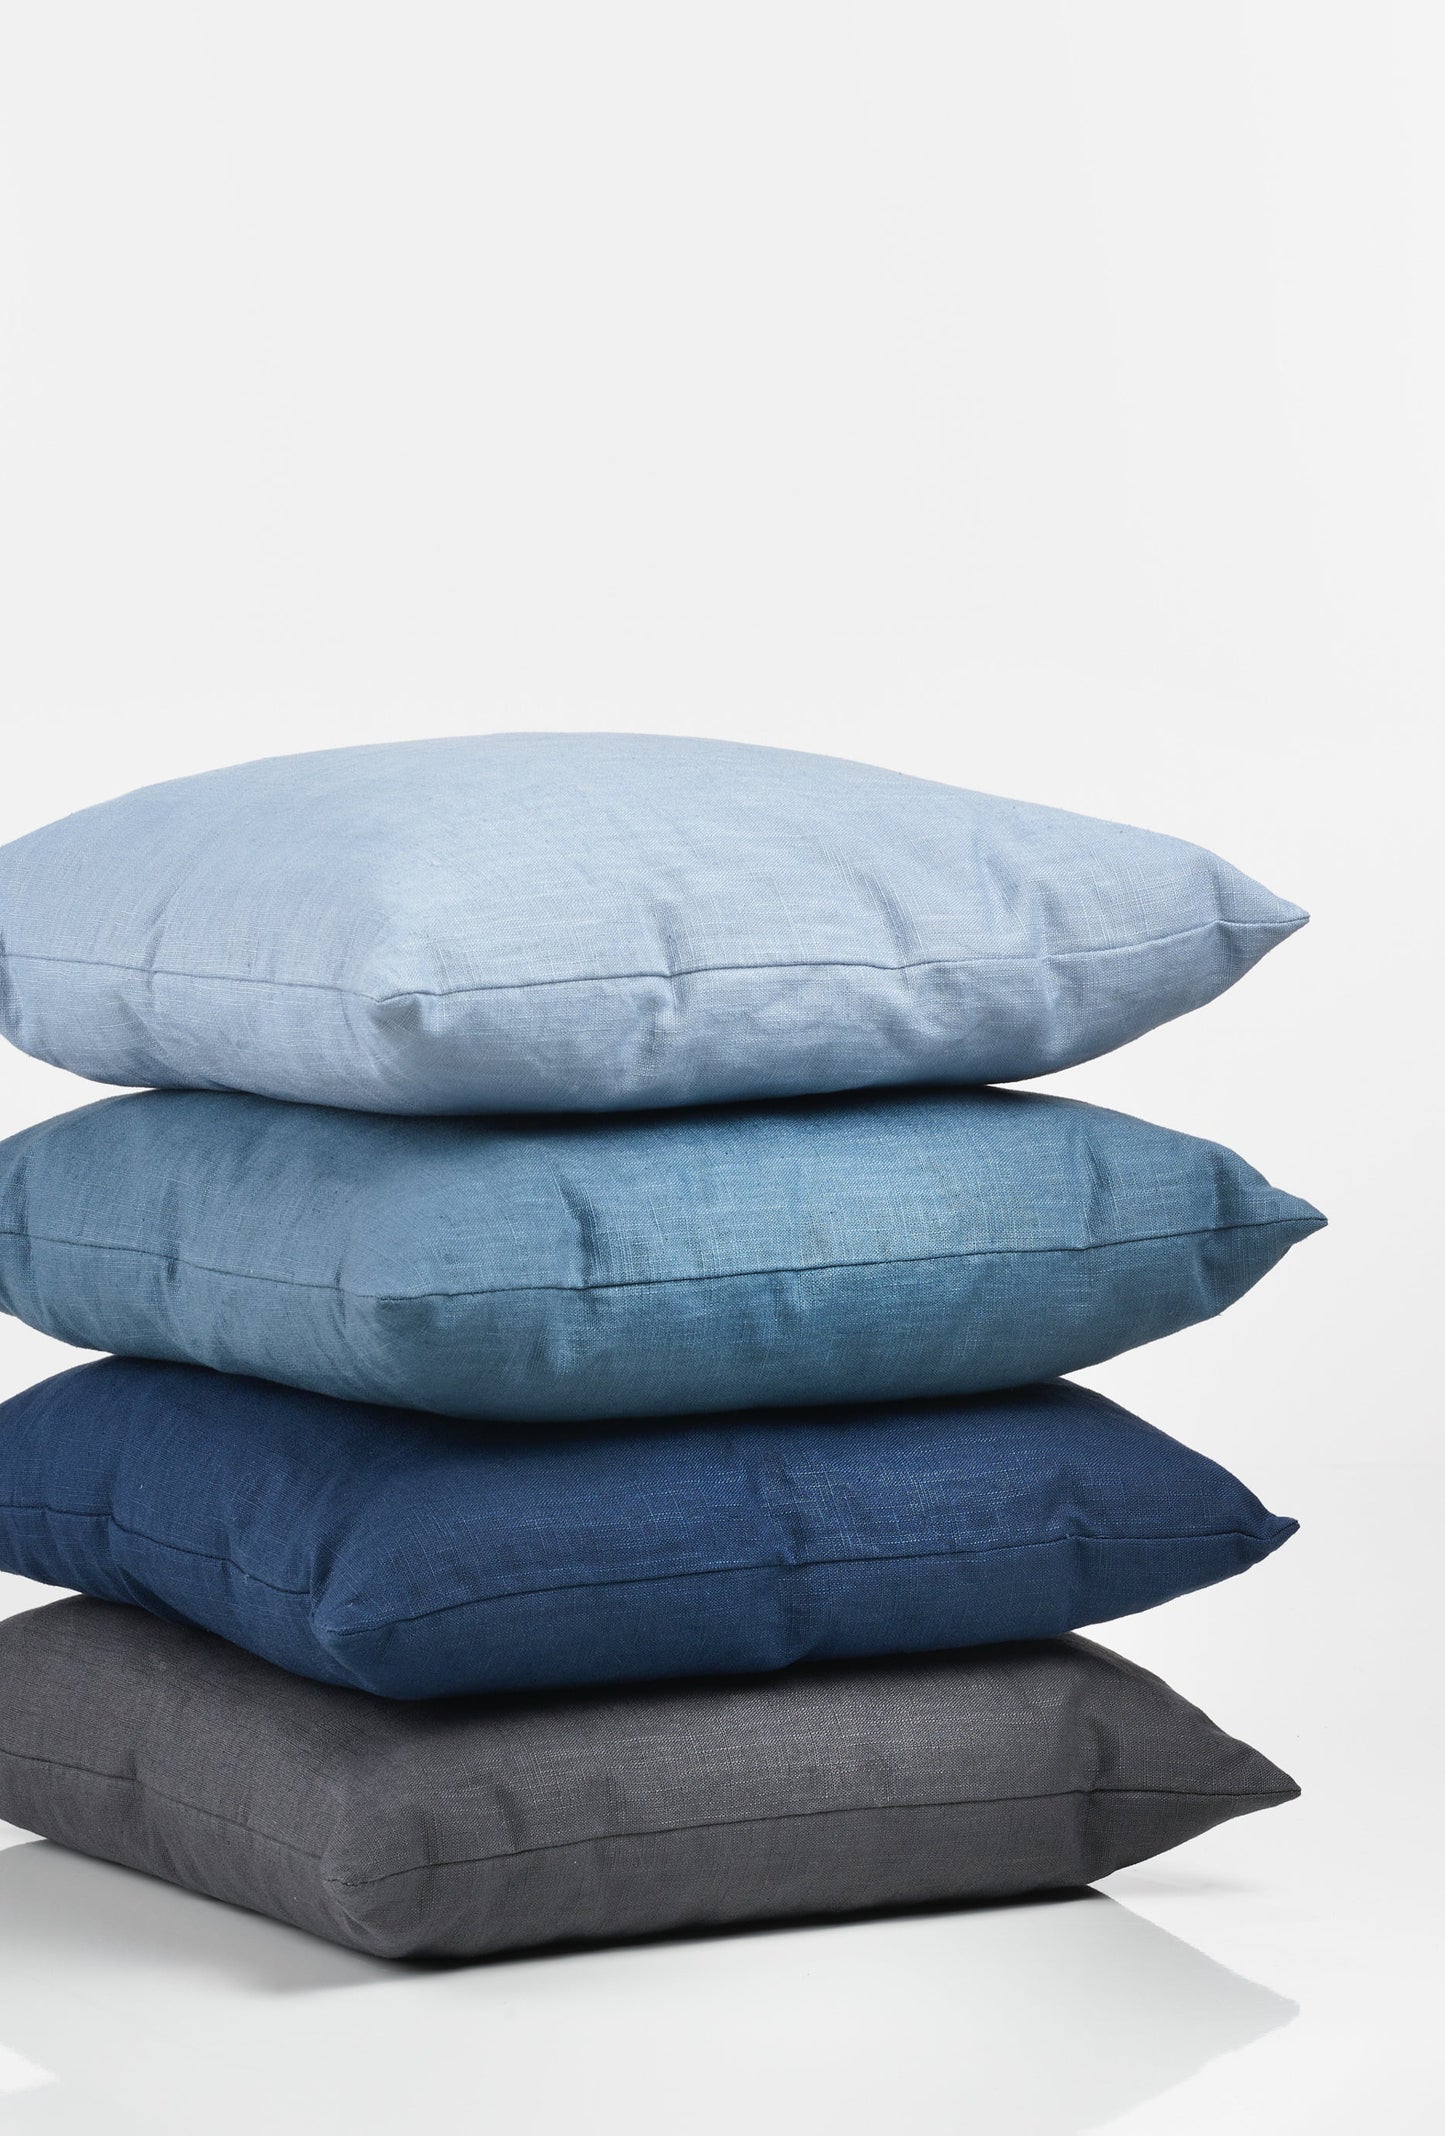 MARIE Decorative linen cushion - Petroleum Blue (42x42)